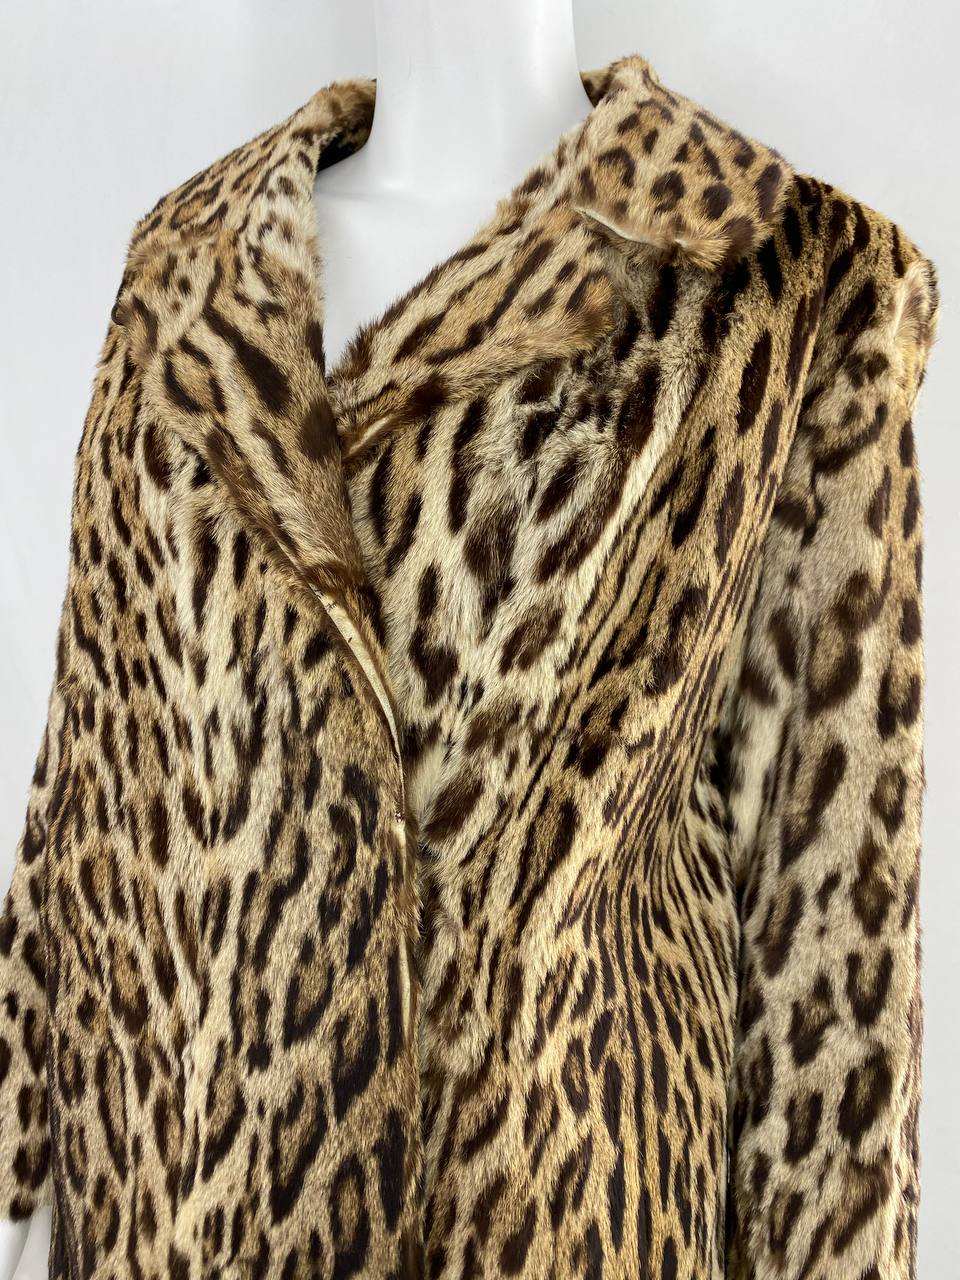 Vintage Real Ocelot Fur Jacket,1950’S-1